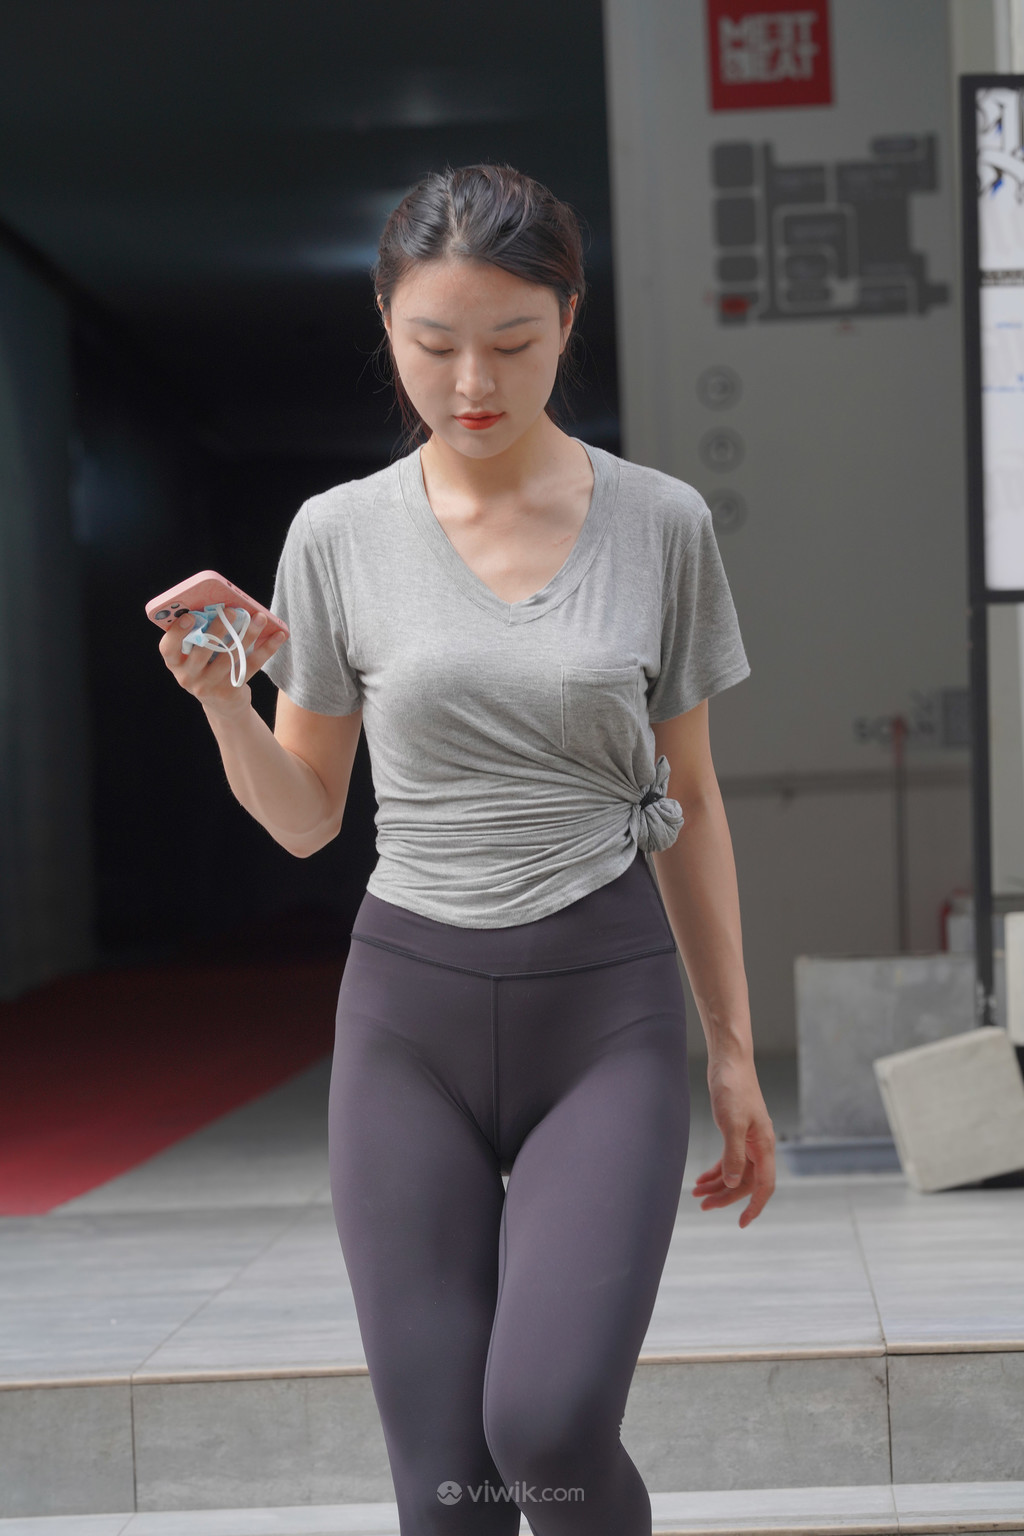 国产精品素颜系列街拍瑜伽裤清纯美女图片